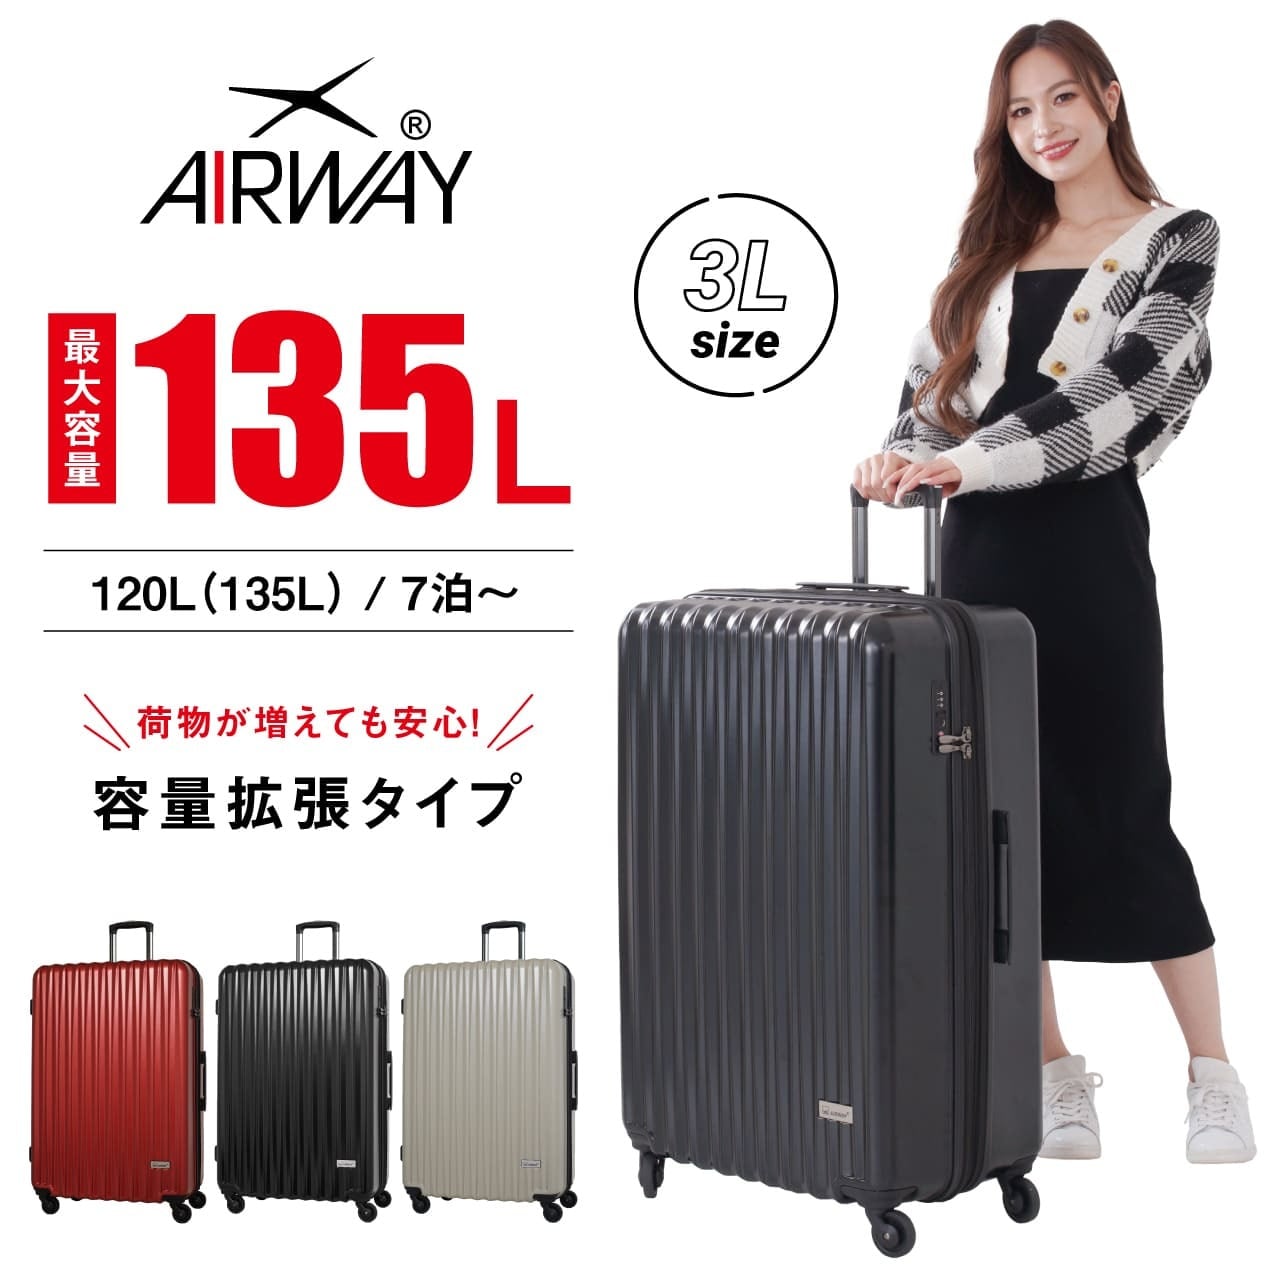 AIRWAY たっぷり入る スーツケース 大型 大容量 135L キャリーケース